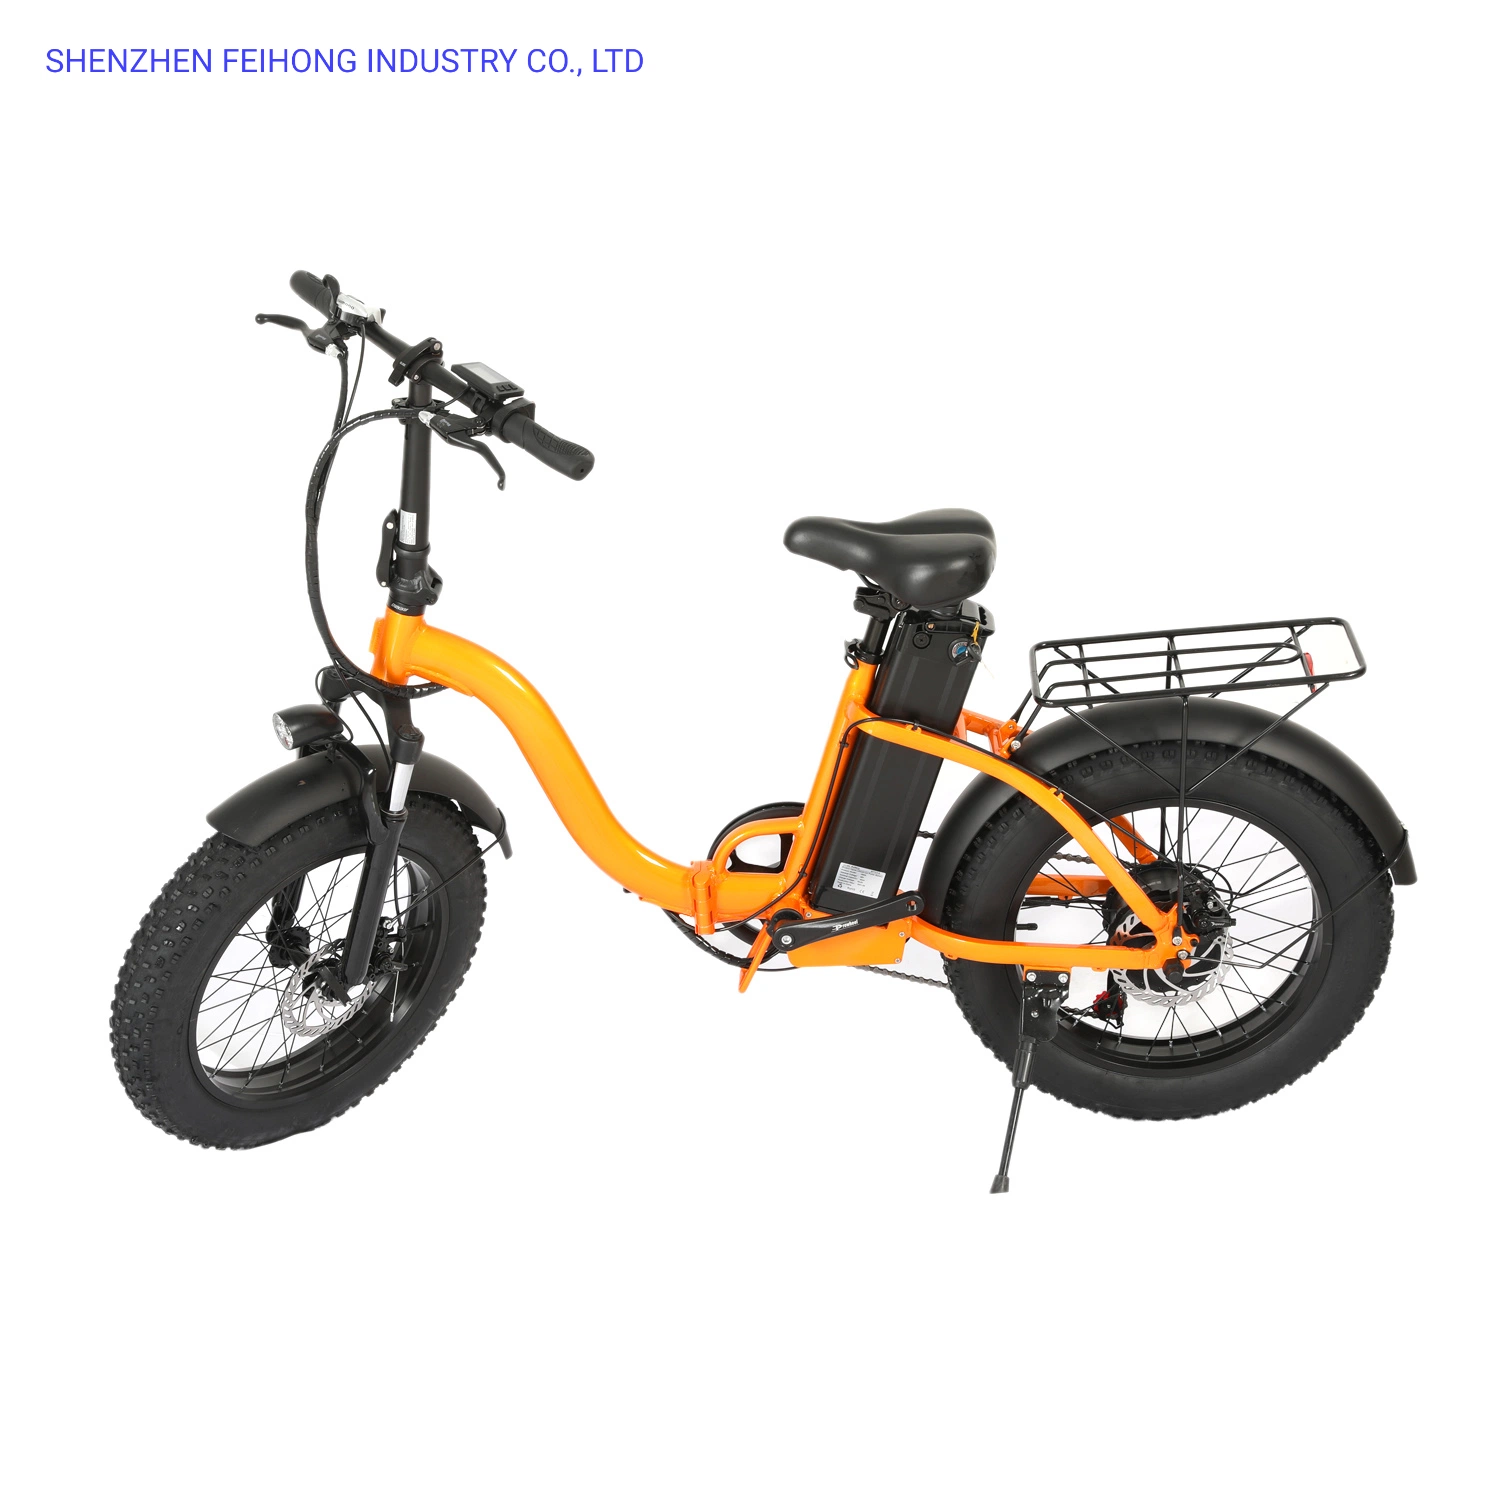 فامال موتوسيكل دراجة كهربائية سكوتر دراجة كهربائية دراجة بخارية بطارية دراجات هوائية هجينة بقدرة 48 فولت بقدرة 12 أمبير بقدرة 500 واط تعمل بالدراجة الهوائية الجبلية الكهربائية ذات المحرك الكهربائي eb-66